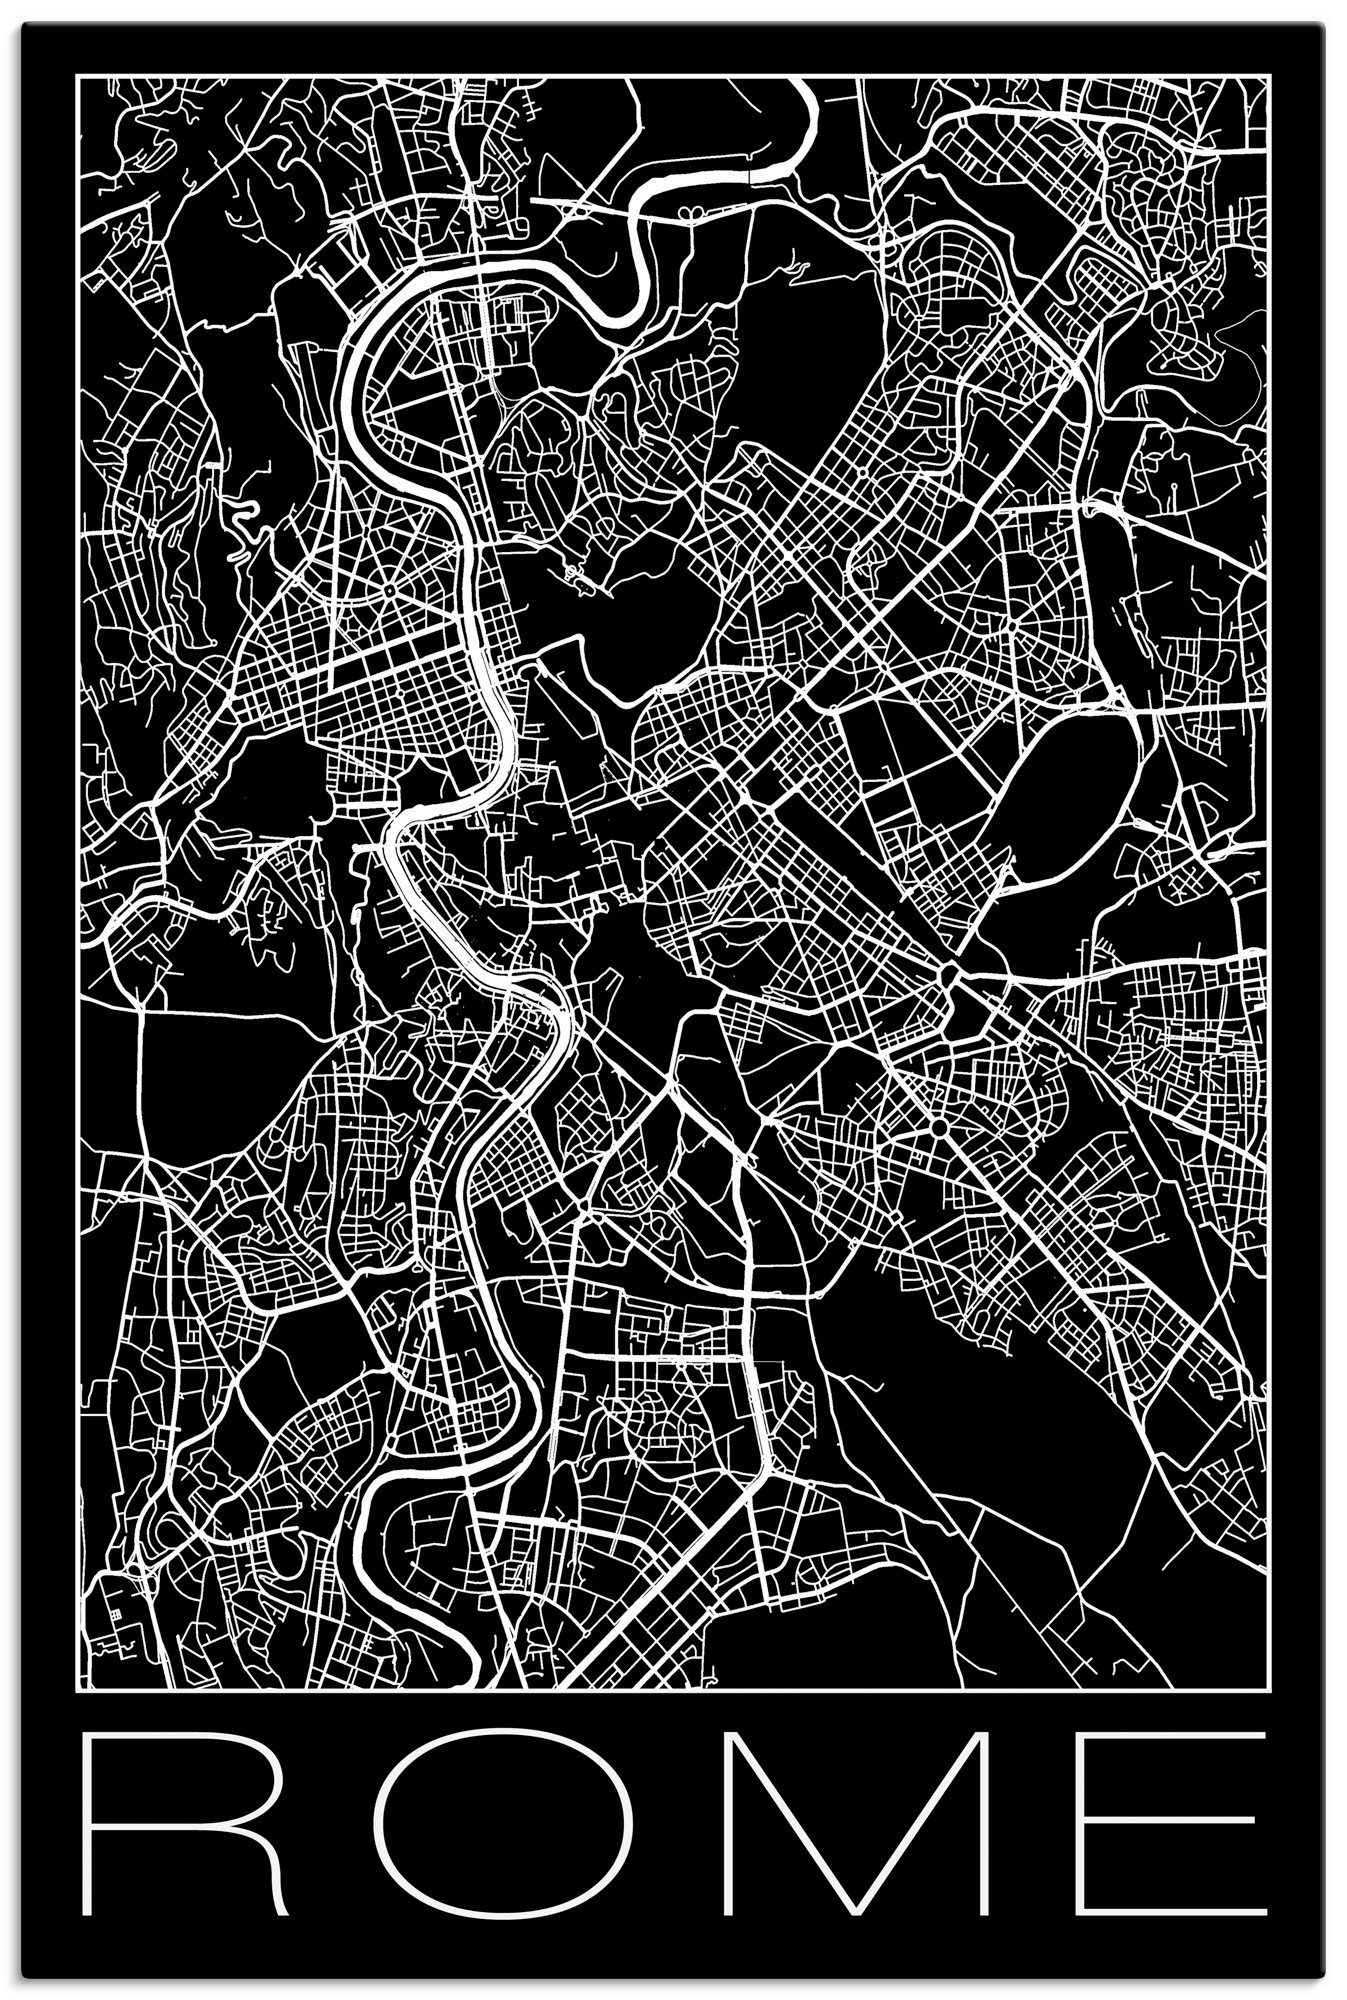 Artland Artprint Retro kaart Rome Italië zwart in vele afmetingen & productsoorten - artprint van aluminium / artprint voor buiten, artprint op linnen, poster, muursticker / wandfo